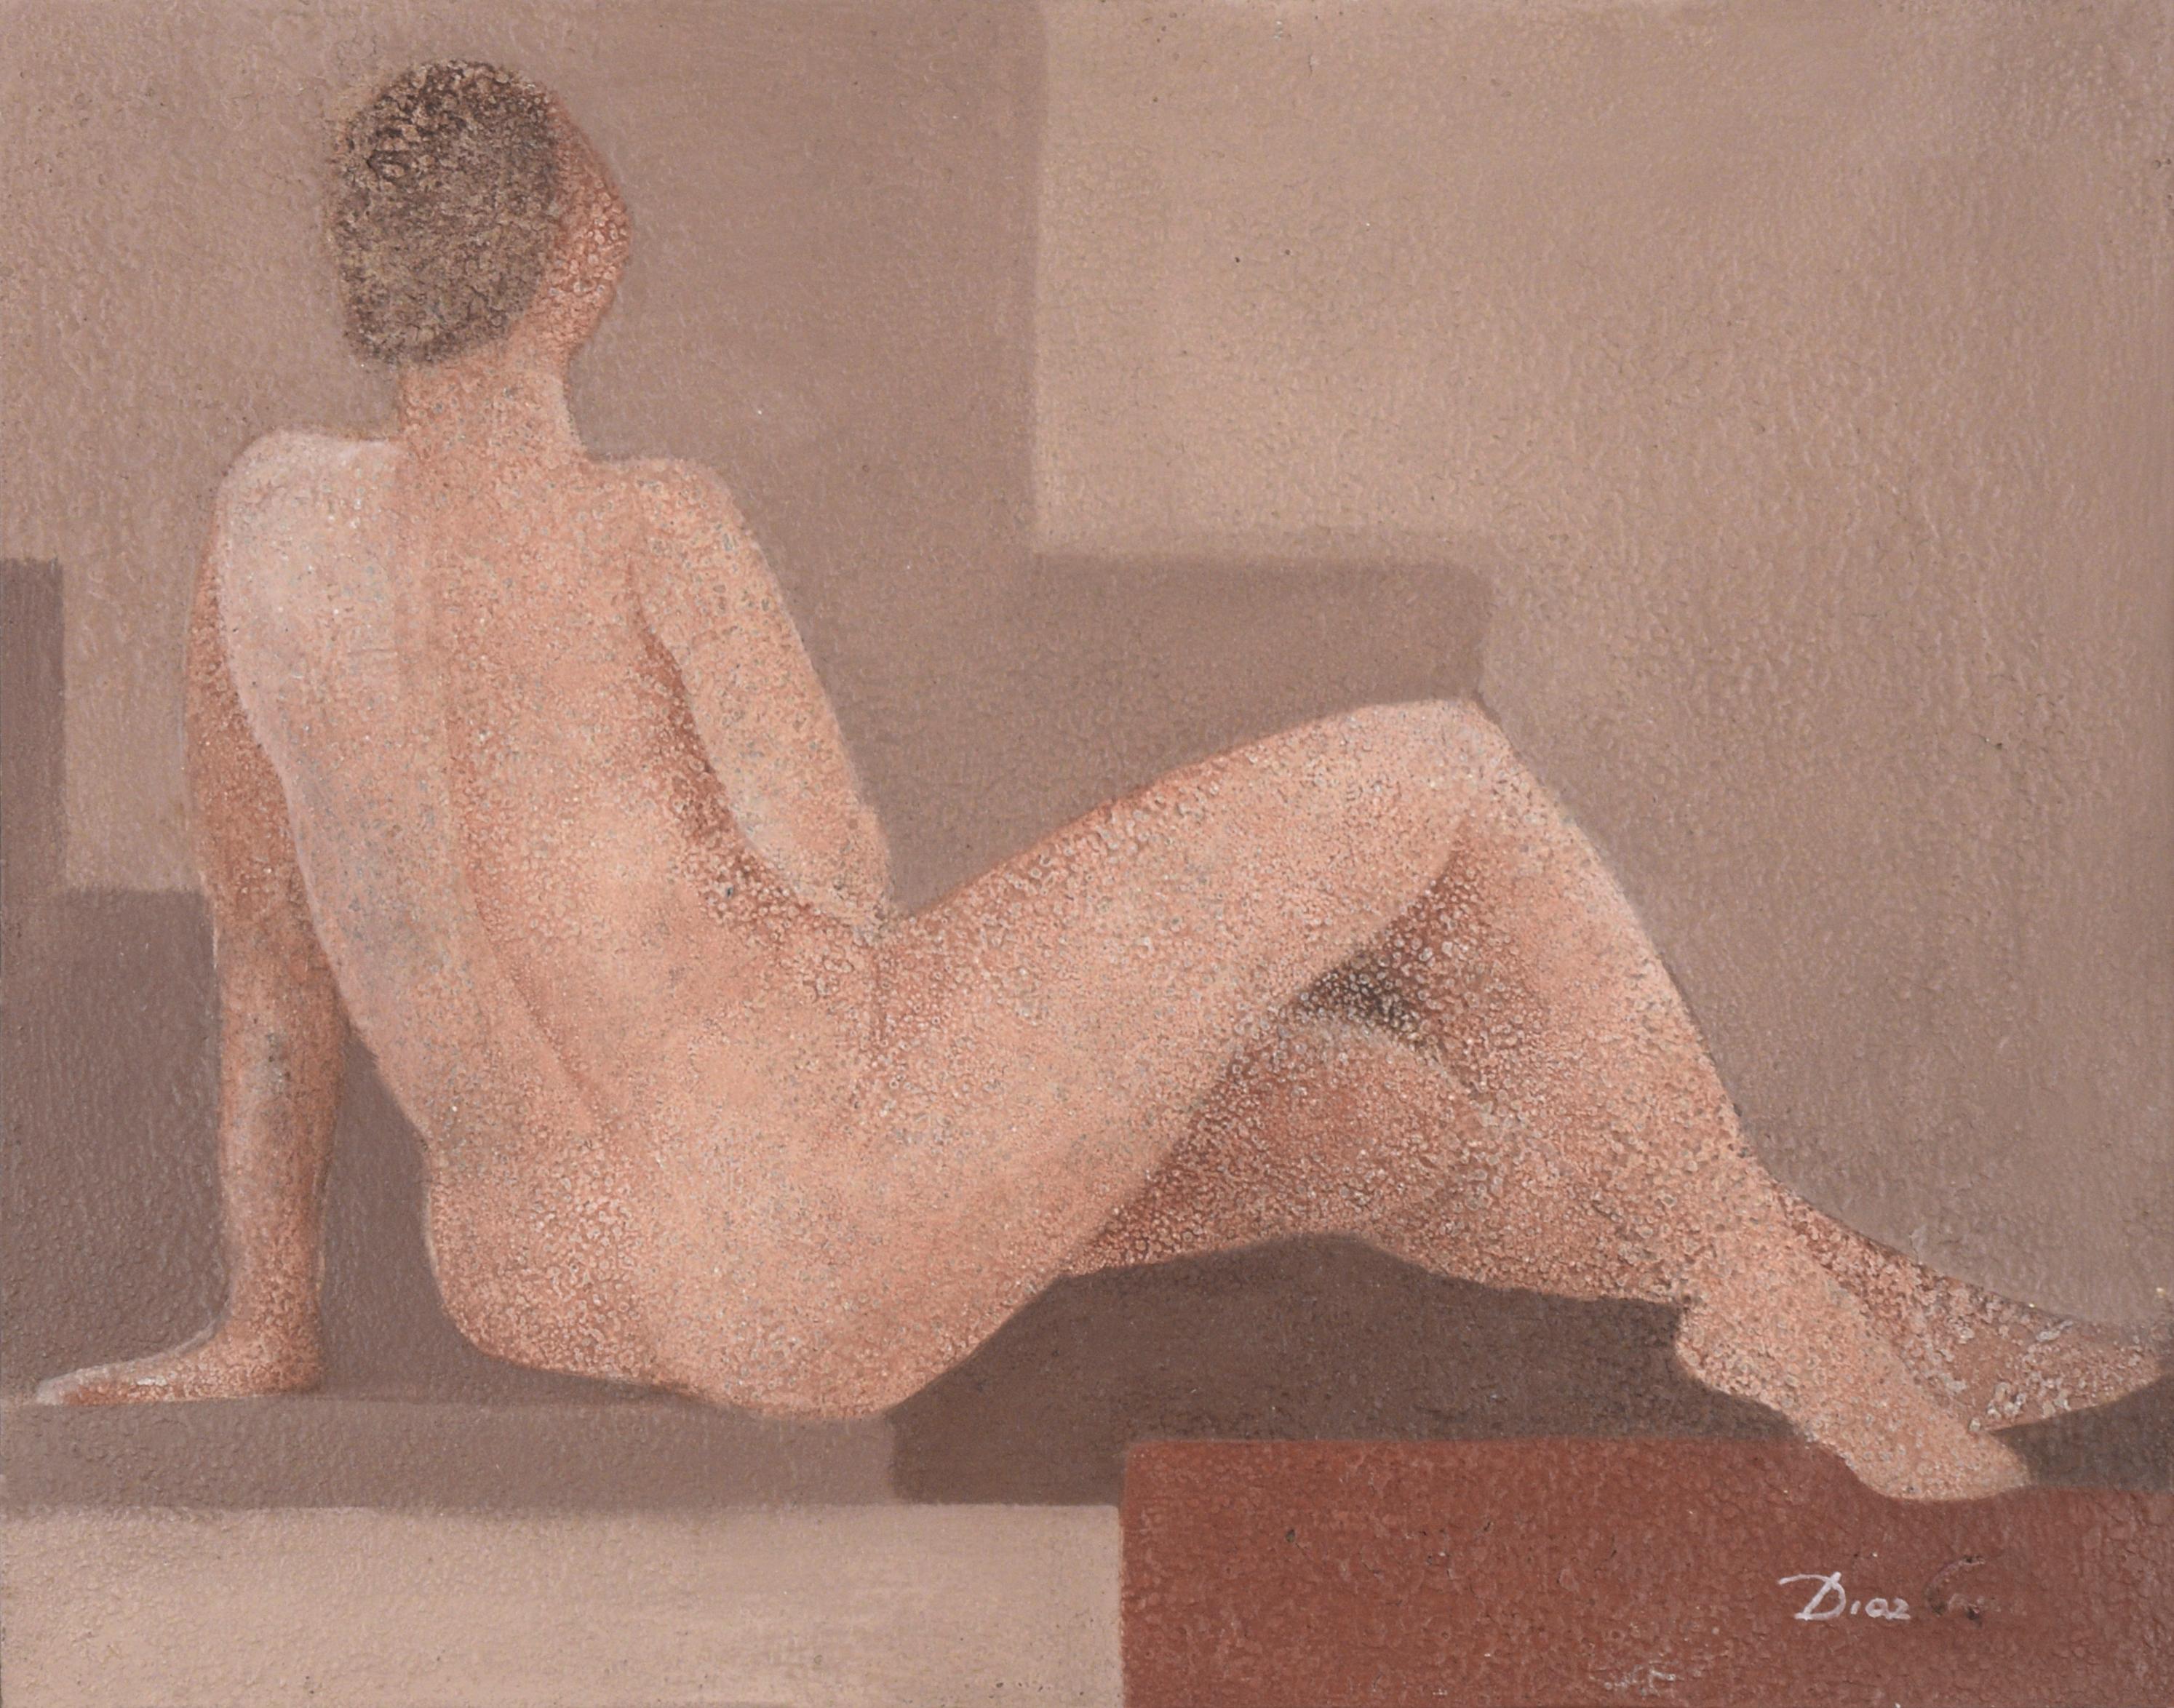 Moderne moderne liegende nackte weibliche Figur  – Painting von Diaz Cruz